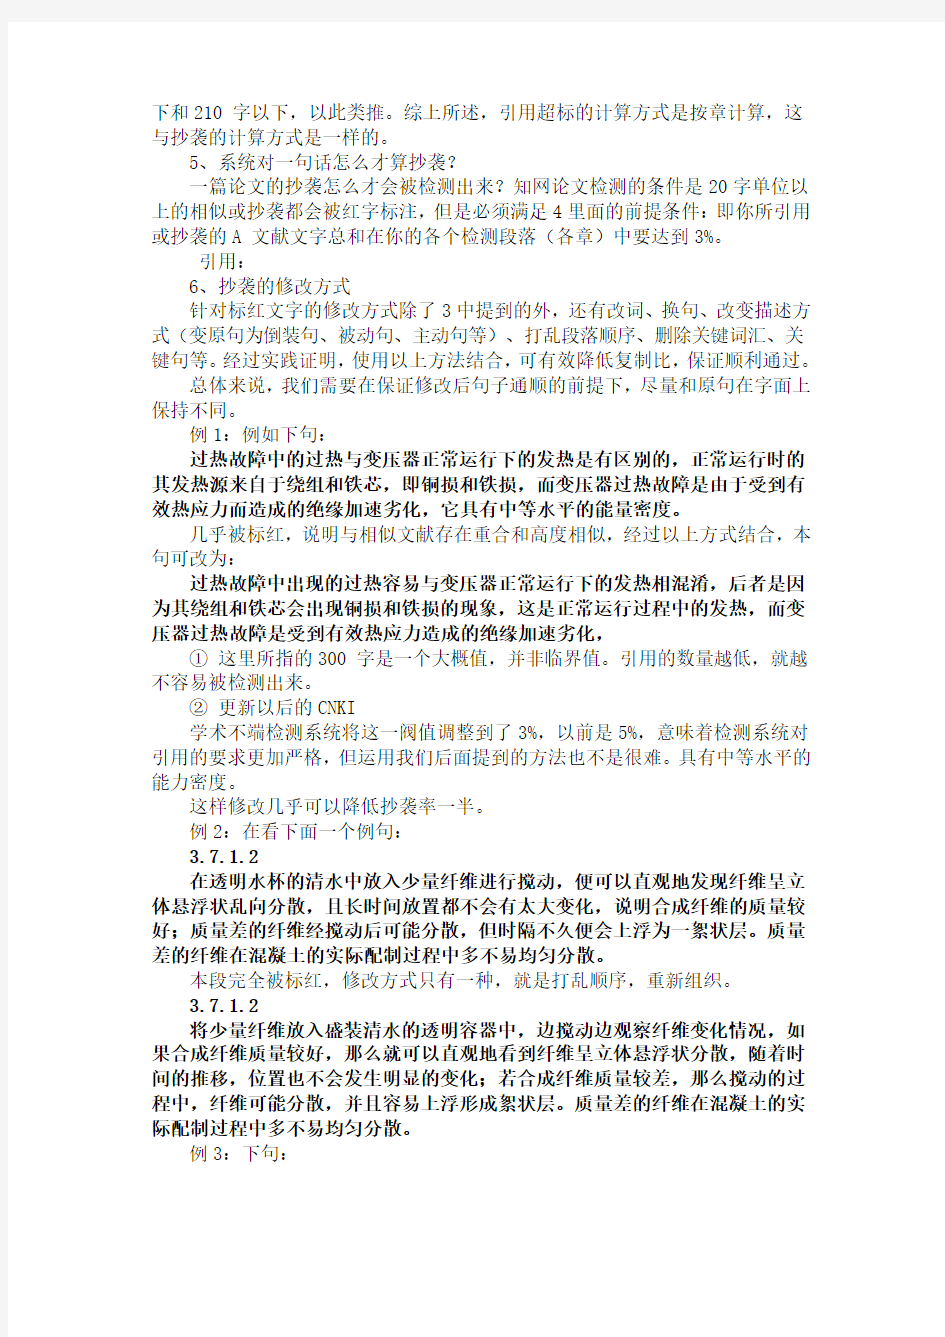 中国知网学位论文学术不端行为检测系统的具体指标